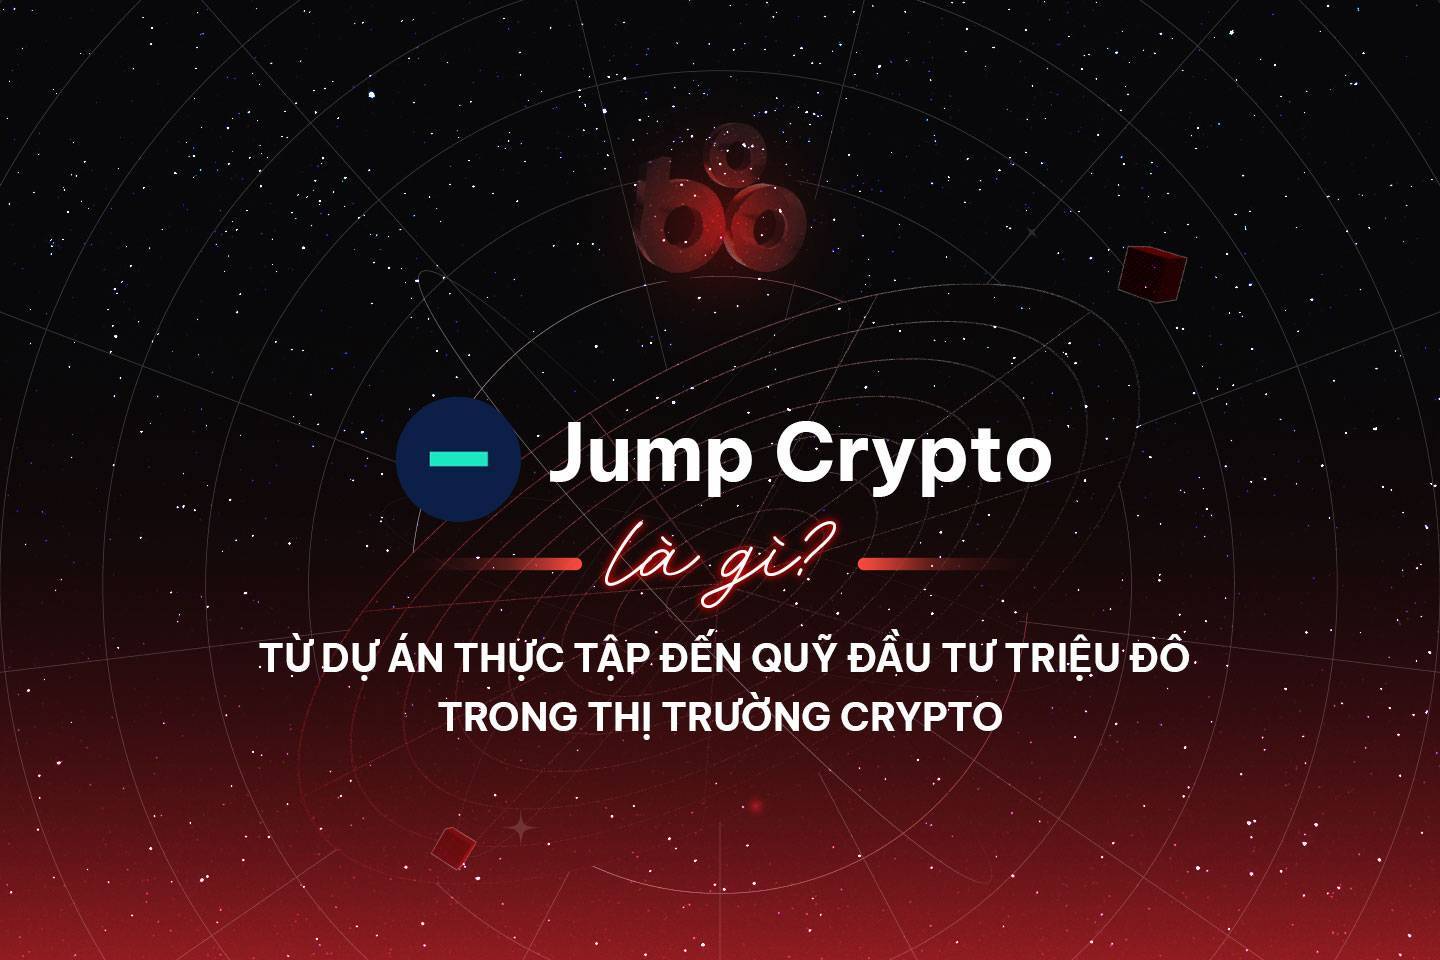 Jump Crypto - Từ Dự Án Thực Tập Đến Quỹ Đầu Tư Triệu Đô Trong Thị Trường Crypto